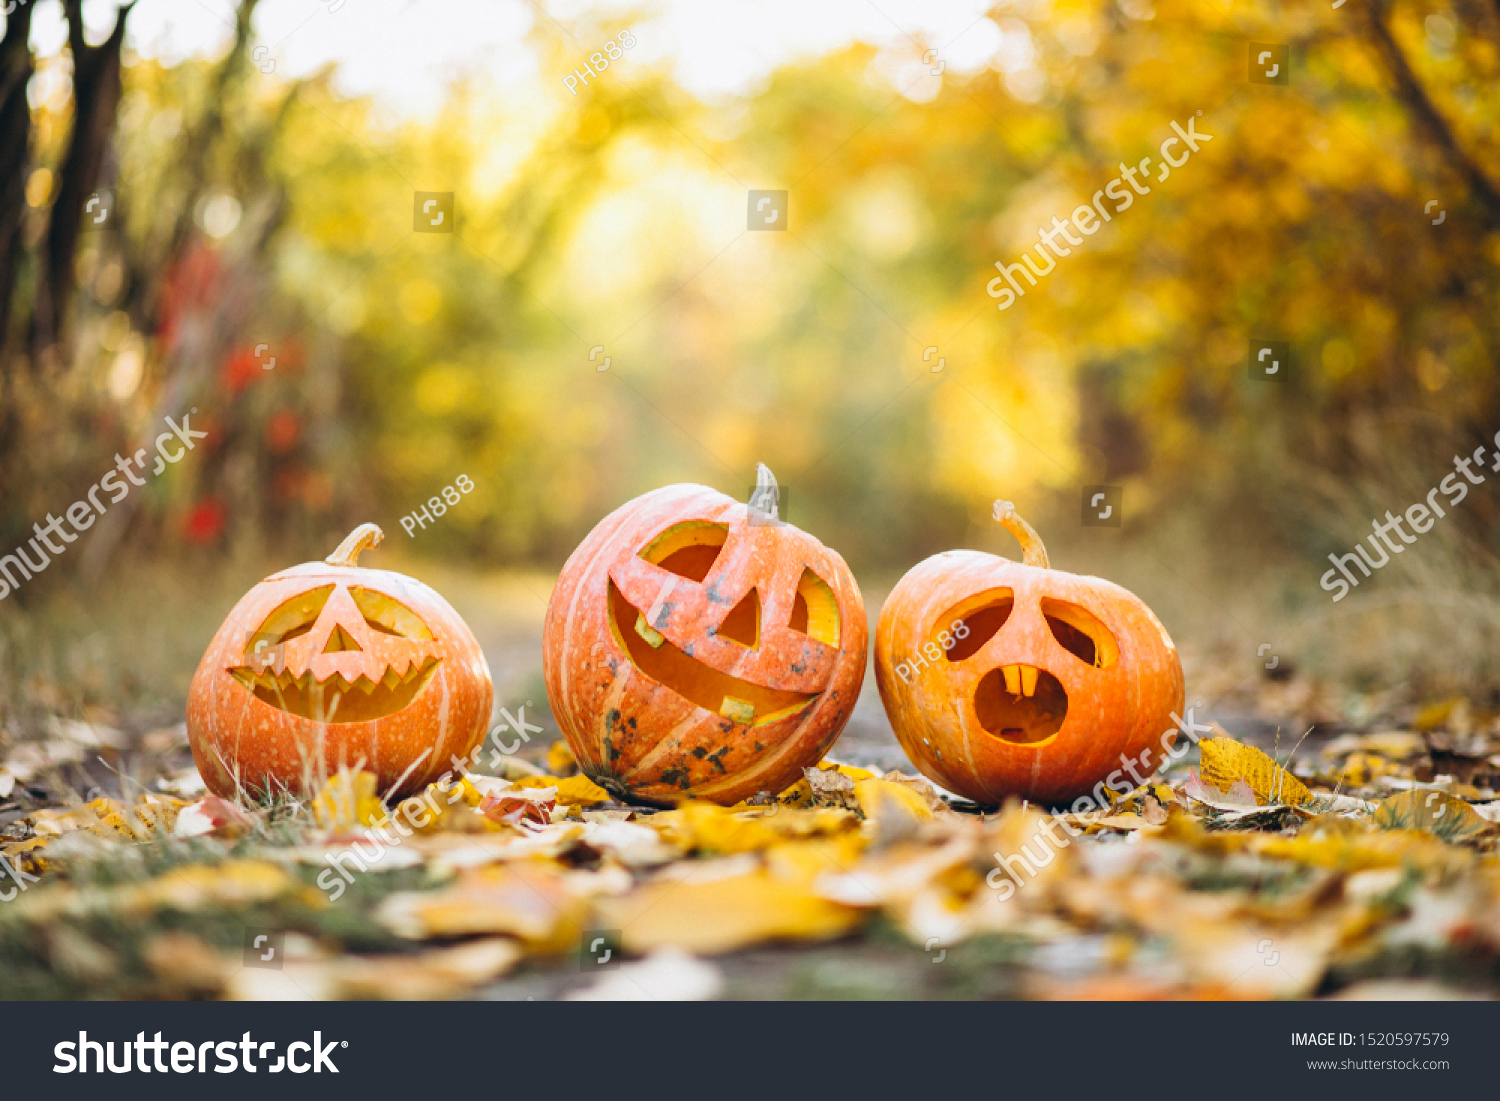 Three cute halloween pumpkins in autumn park #1520597579